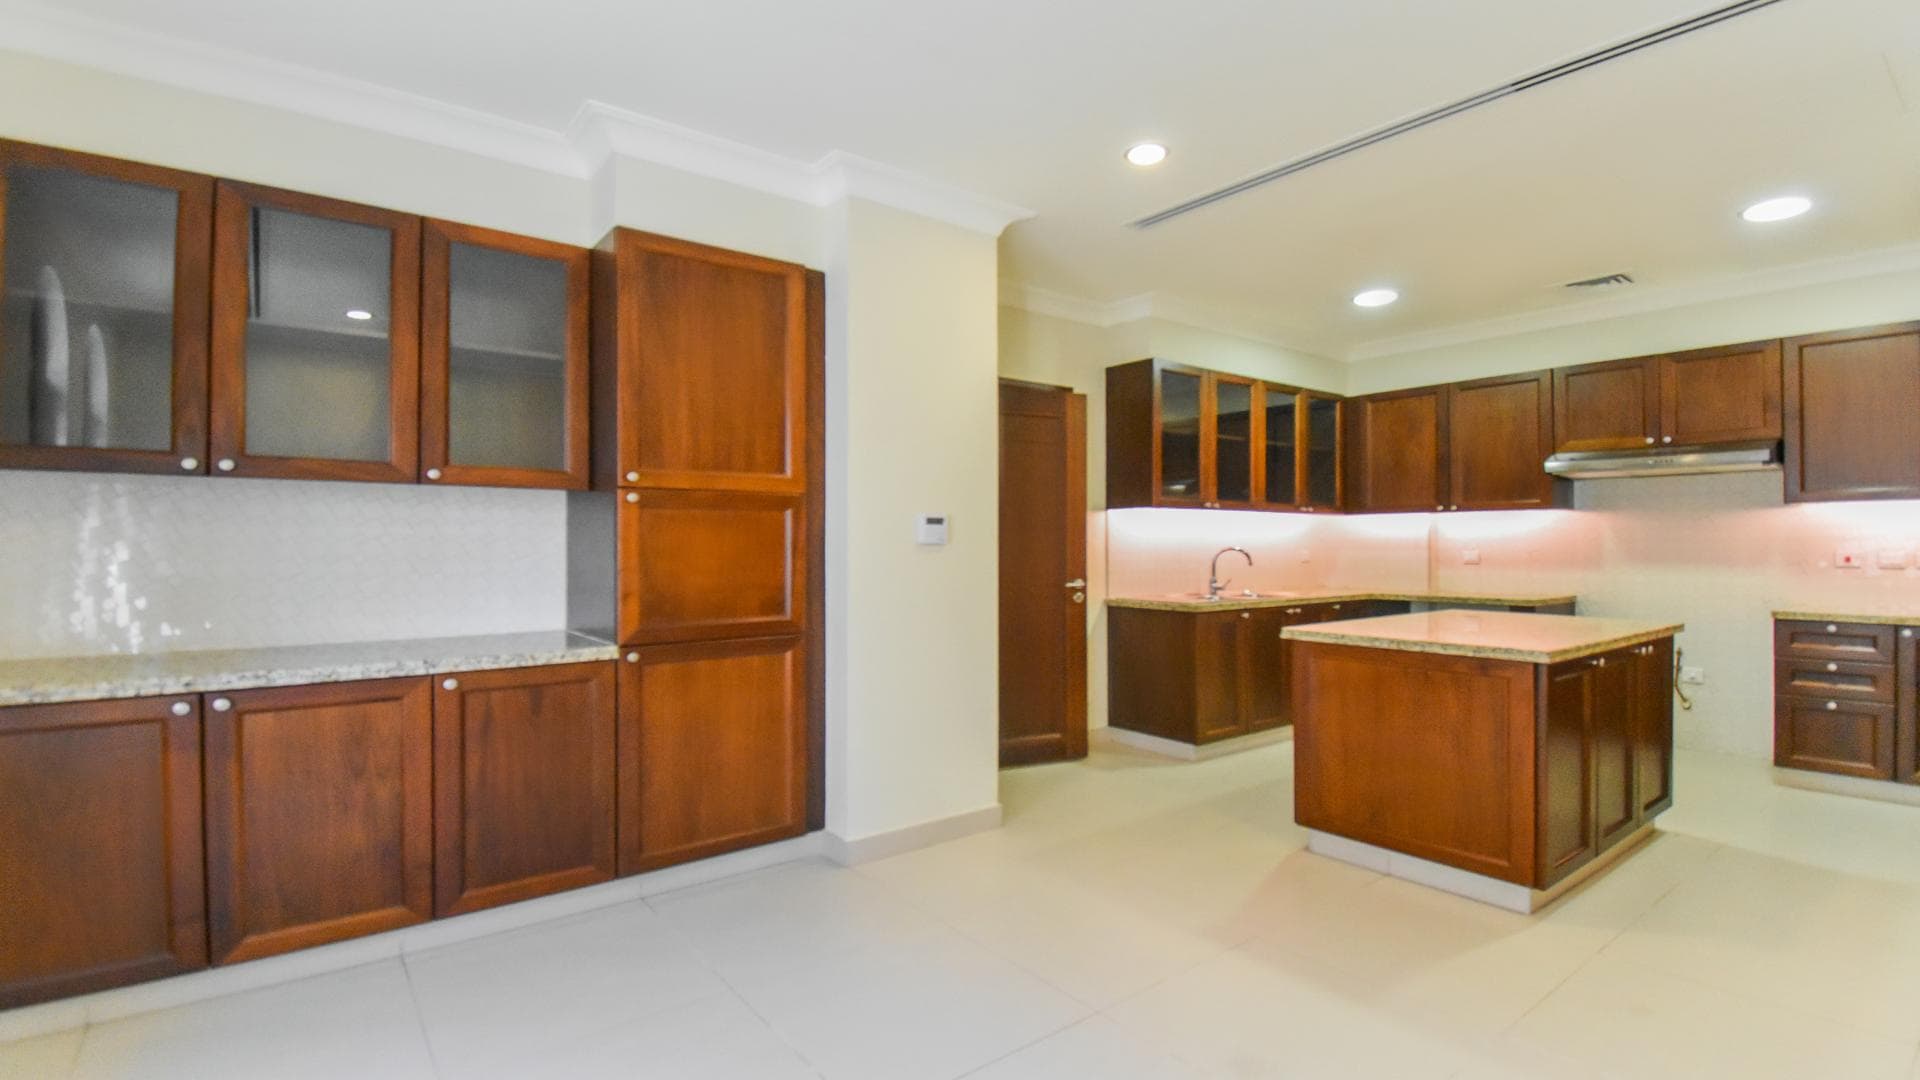 4 Bedroom Villa For Rent Rasha Lp14683 7b3bd9c5d0a3e00.jpg